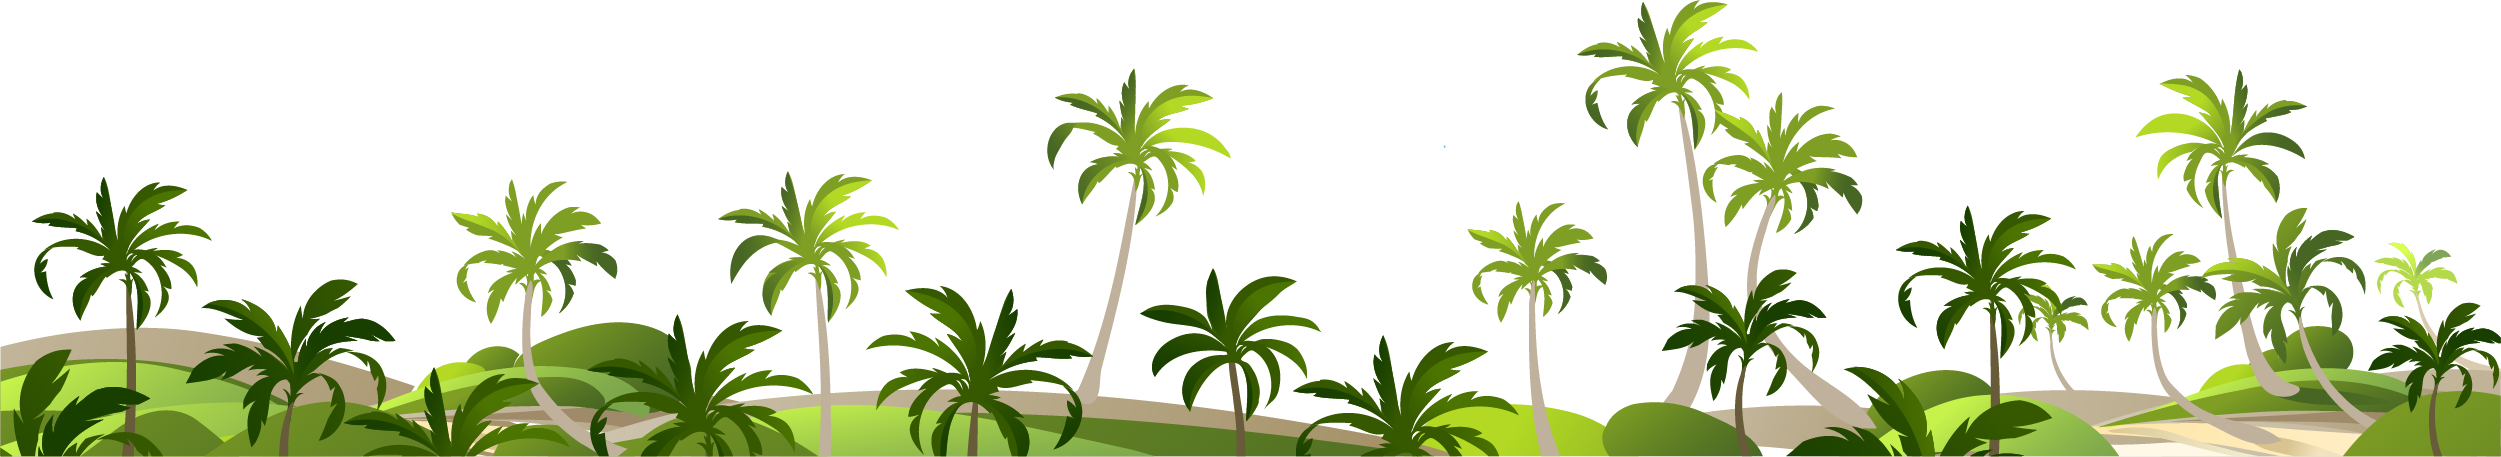 Adobe Illustrator Coco - Coconut Grove Decoration Borders Png (2501x457)